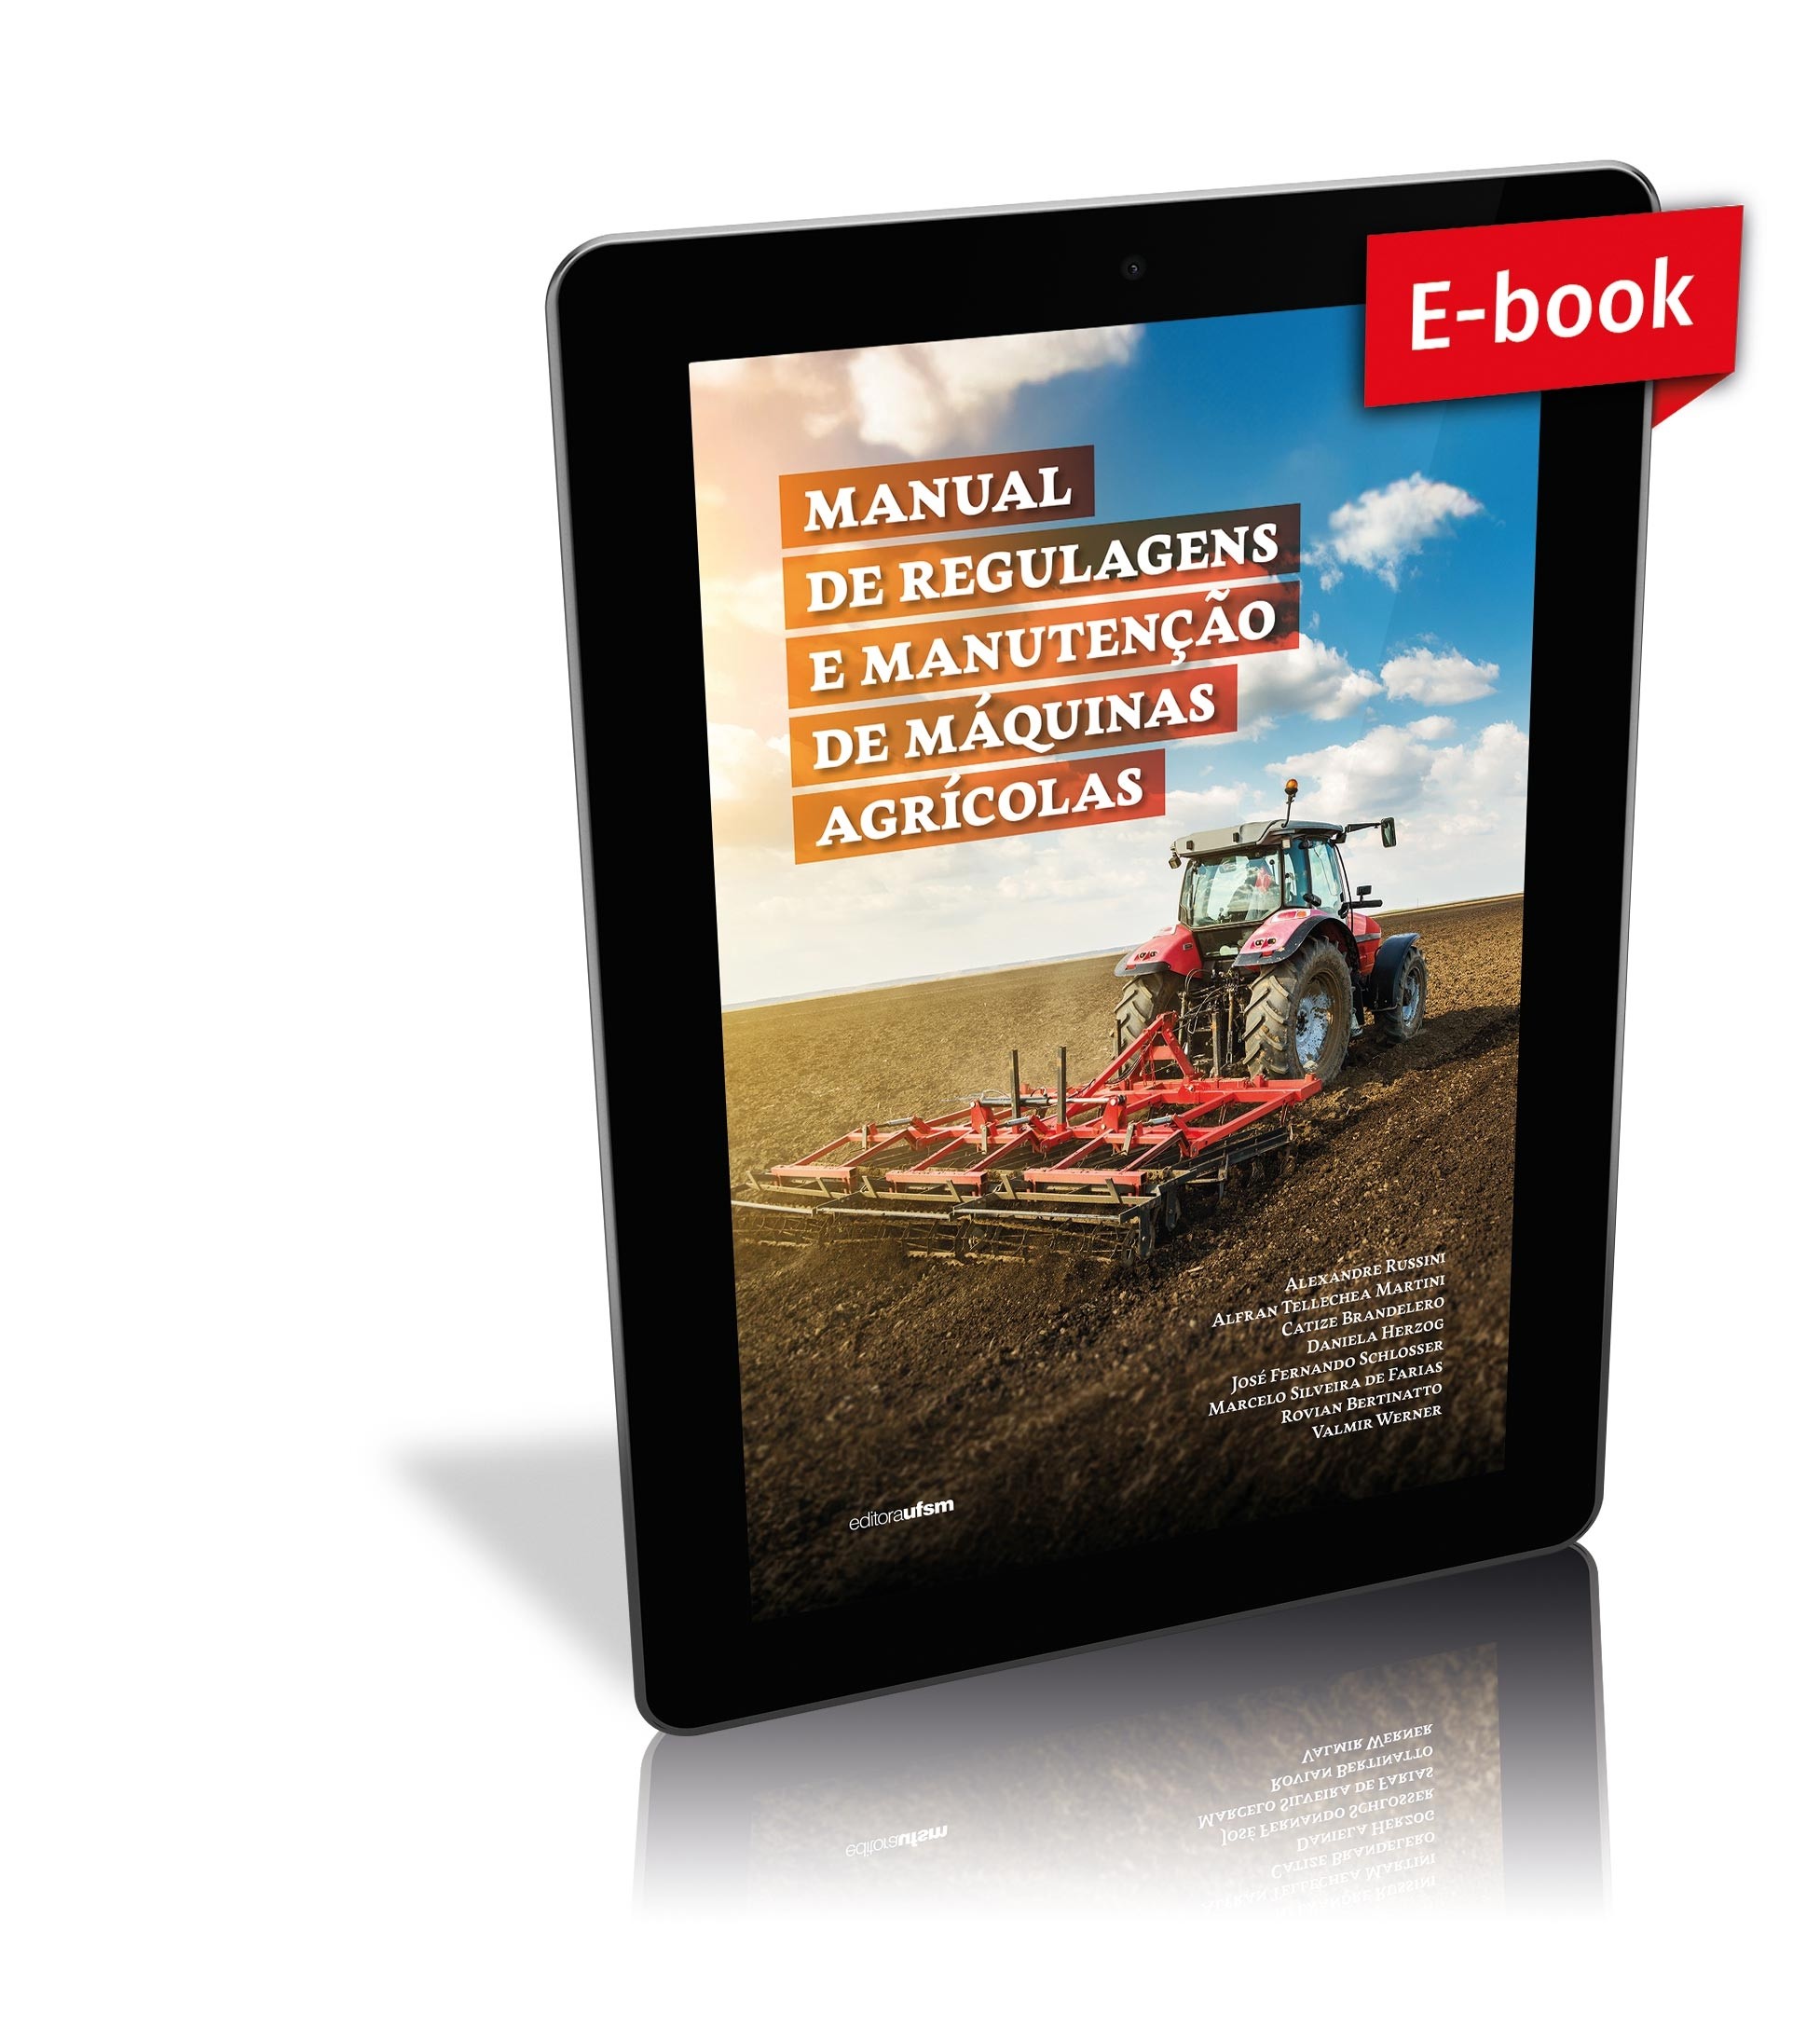 Capa do ebook Manual de regulagens e manutenção de máquinas agrícolas